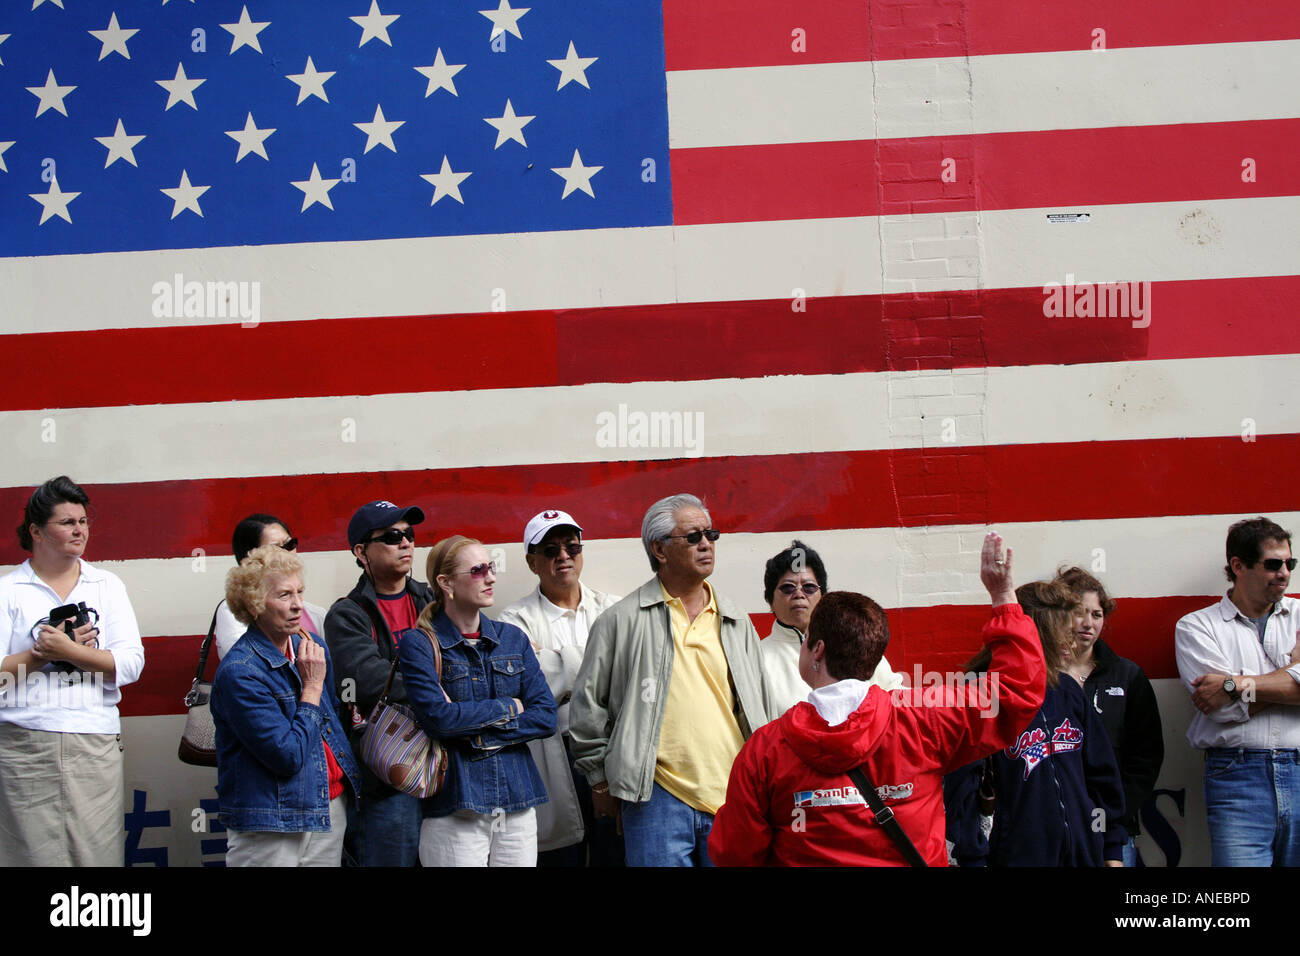 Ein Enthnically Diverse Reisegruppe vor einer großen amerikanischen Flagge, San Francisco, Kalifornien Stockfoto